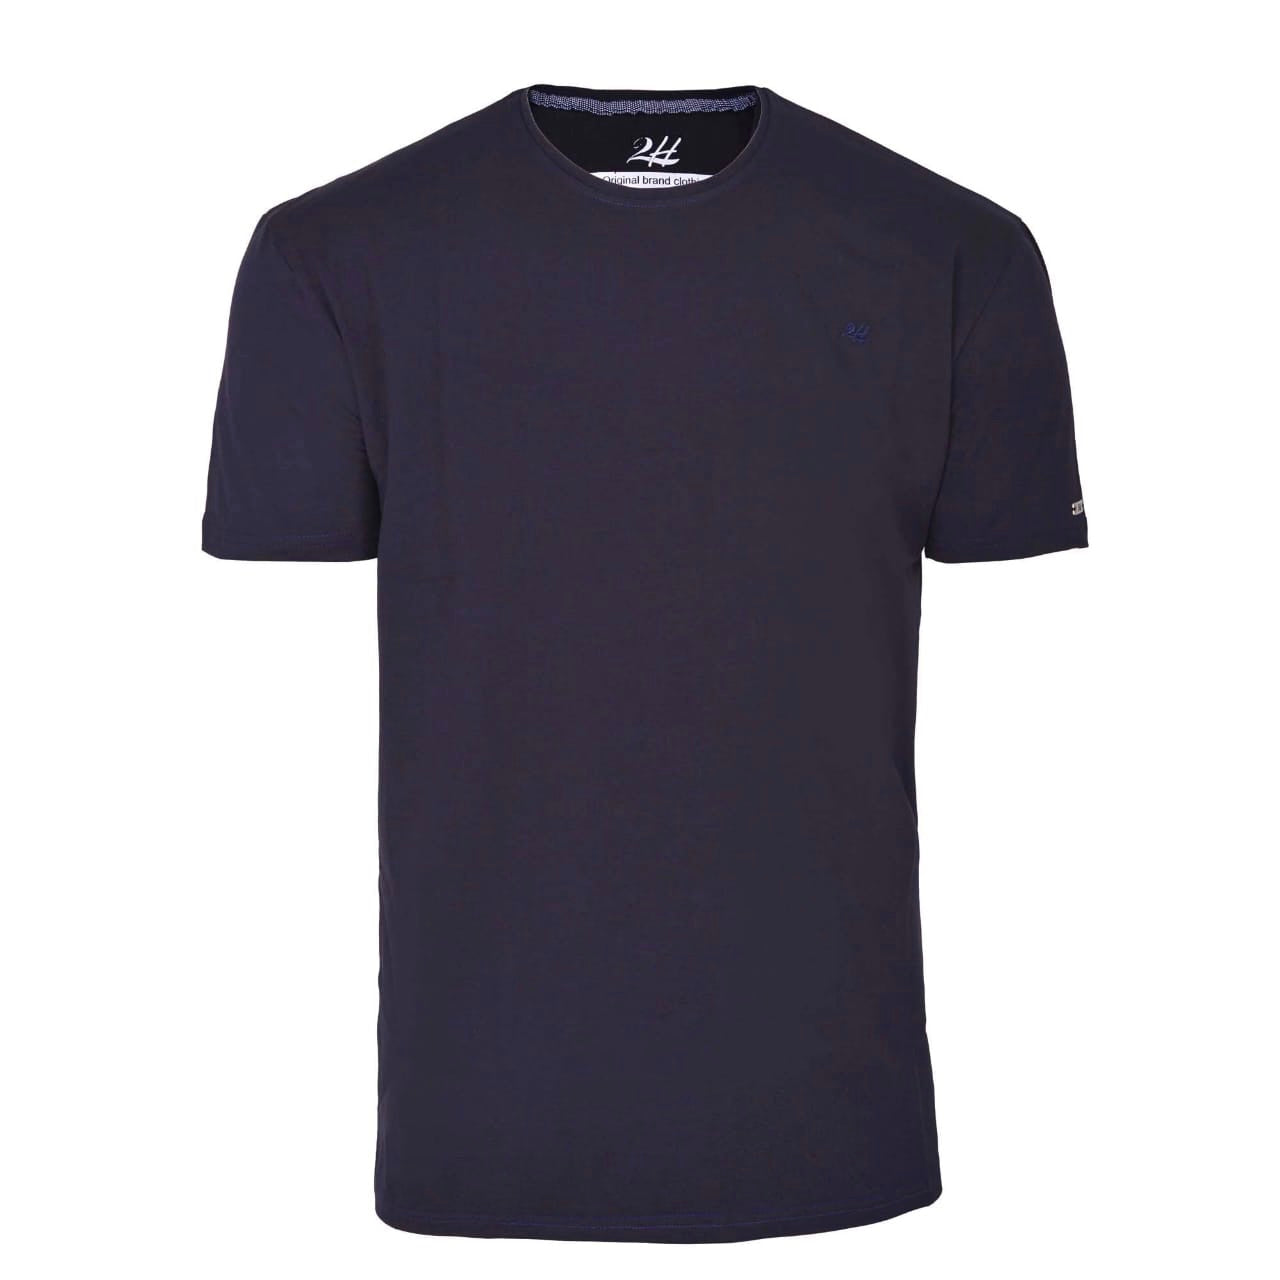 SALE! 2H Navy Blue Short Sleeve Basic T-shirt